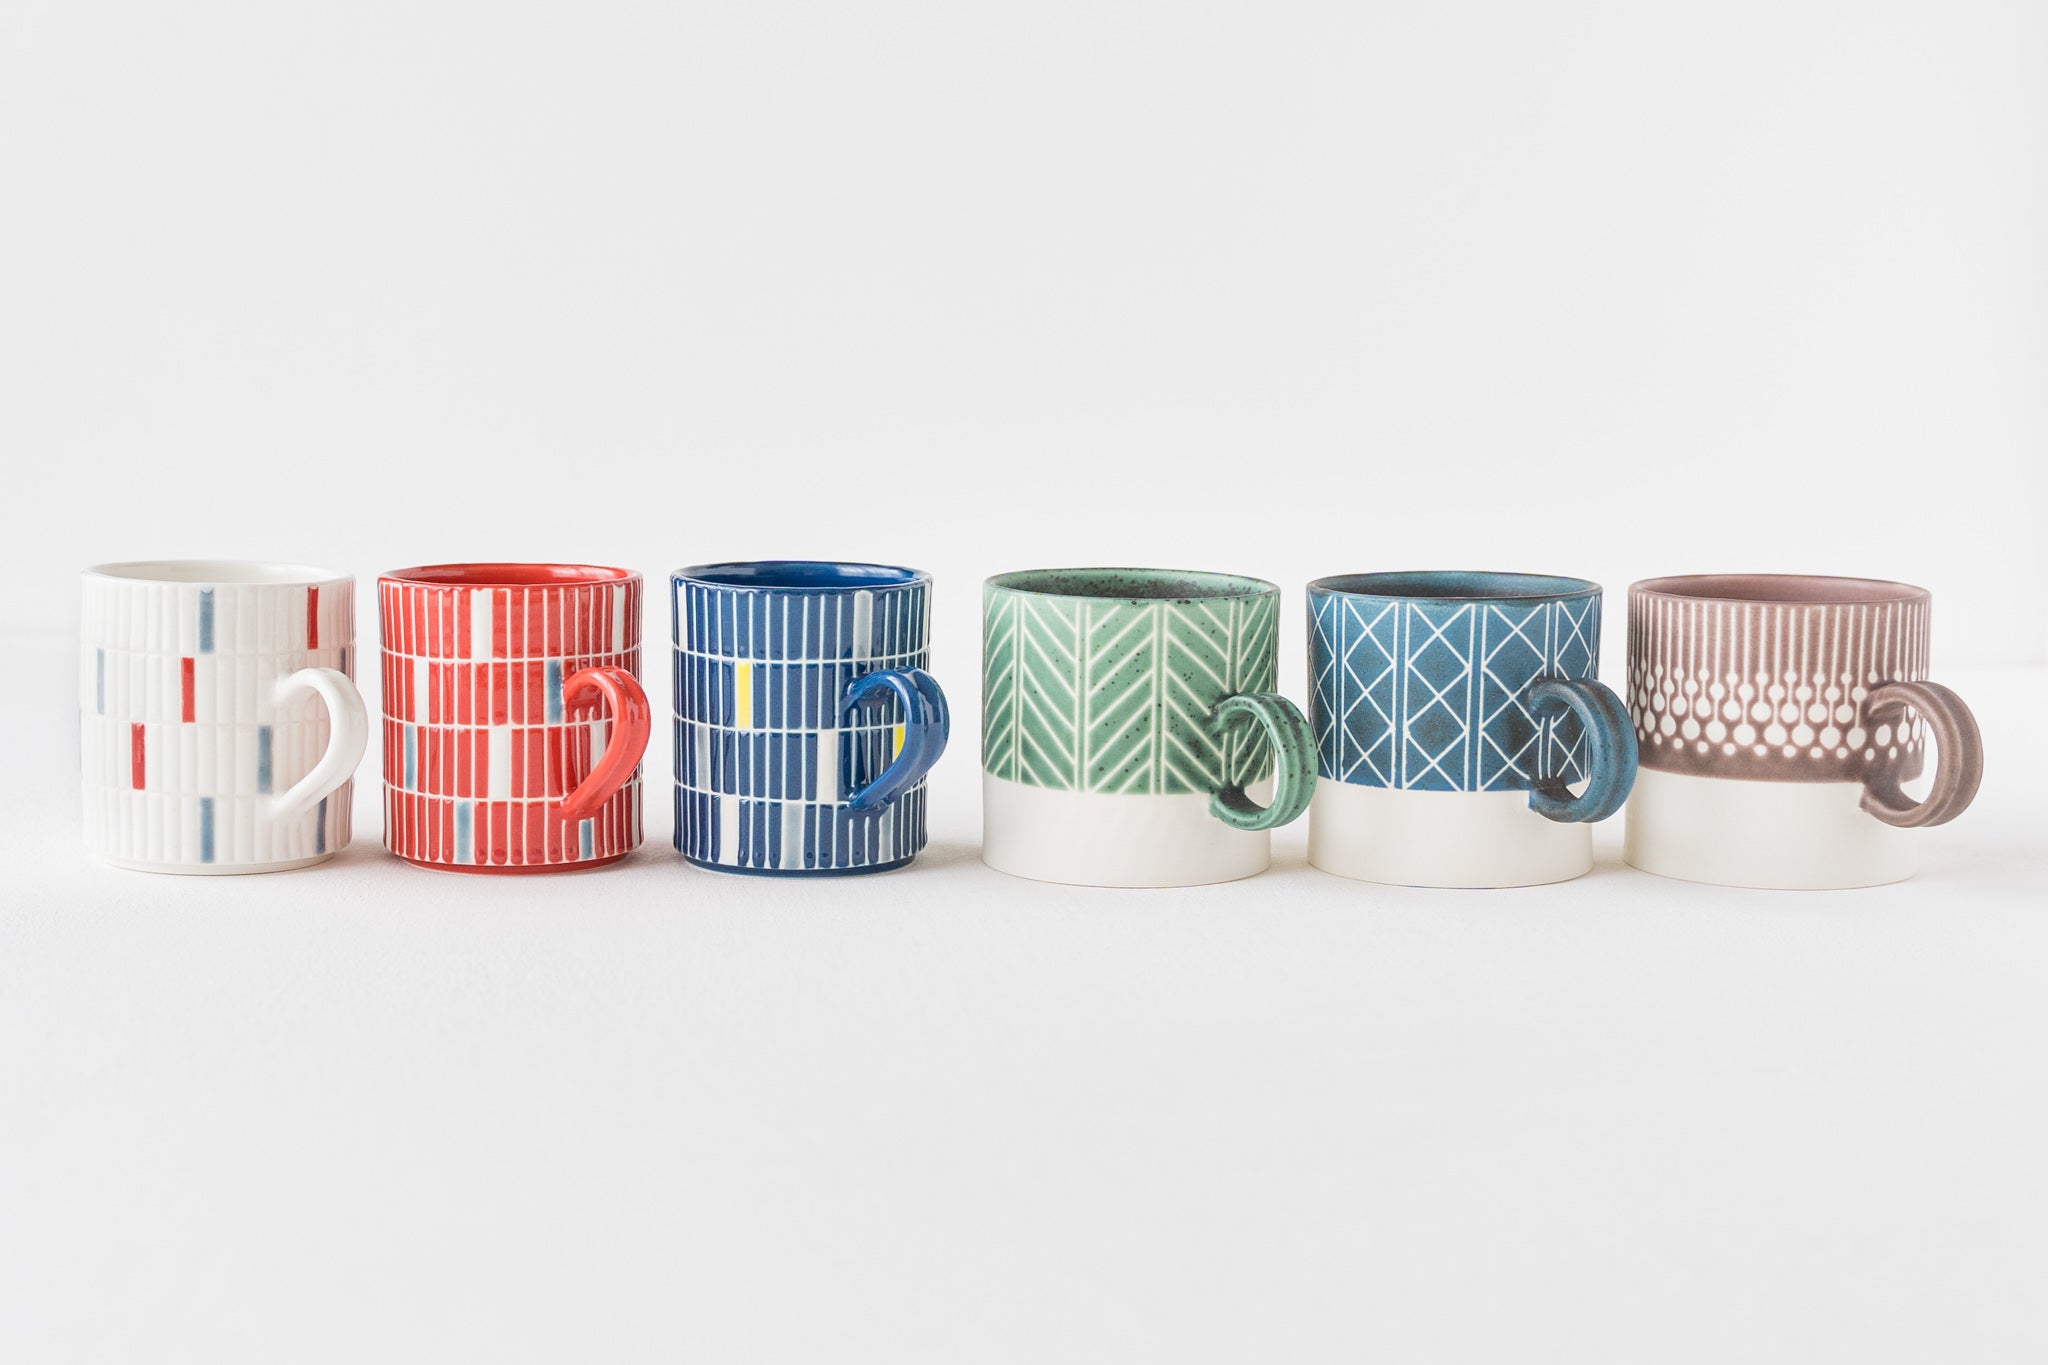 Yukari Nakagawa's tile mug that will make your time at home wonderful